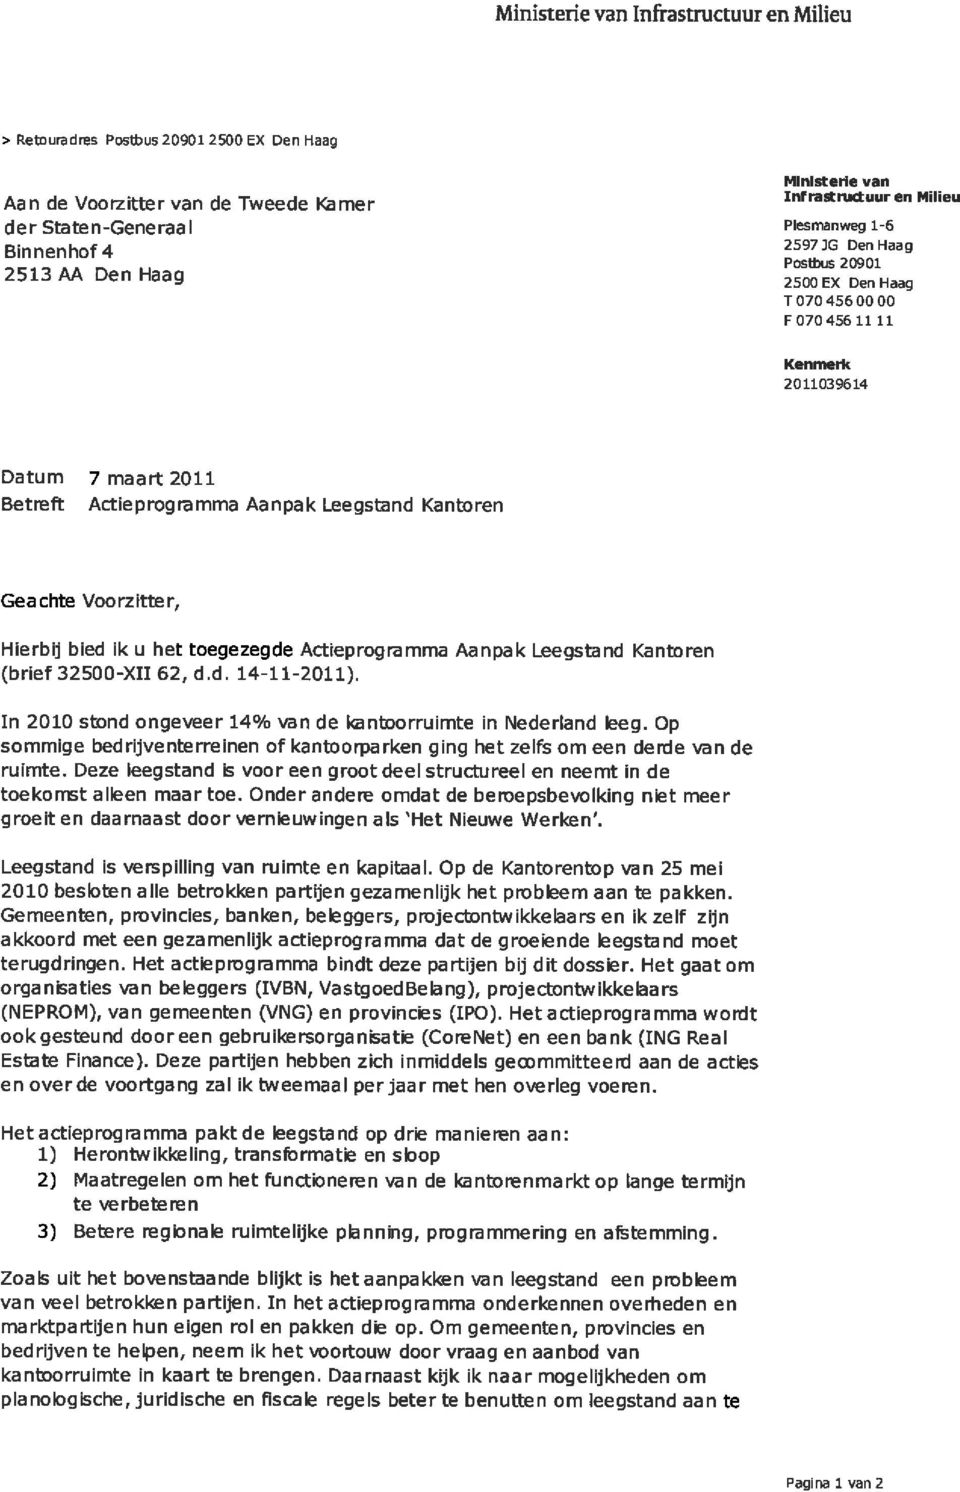 Geachte Voorzitte r, Hierbij bied ik u het toegezegde Actieprog mmma Aanpa k Leegstand Kantoren (brief 32500-X11 62, d.d. 14-11-2011).